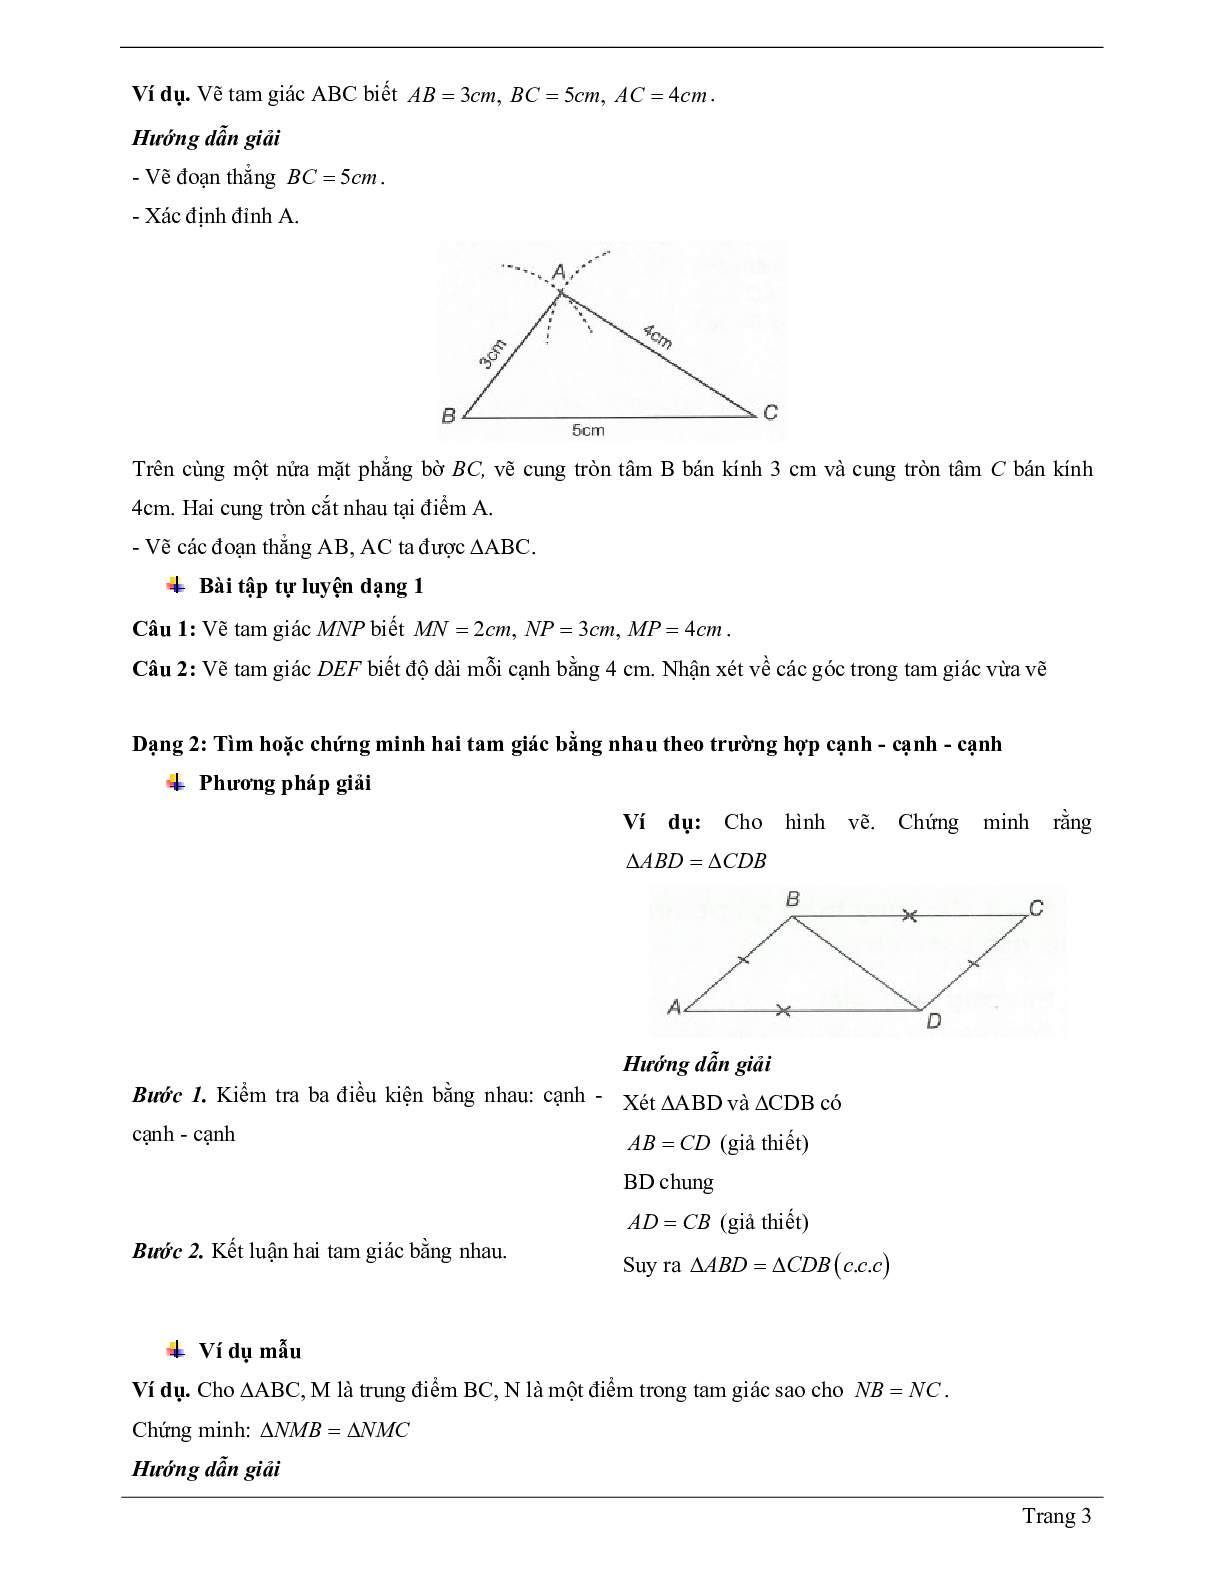 Lý thuyết Toán 7 có đáp án: Trường hợp bằng nhau thứ nhất của tam giác: cạnh - cạnh - canh (c.c.c) (trang 3)